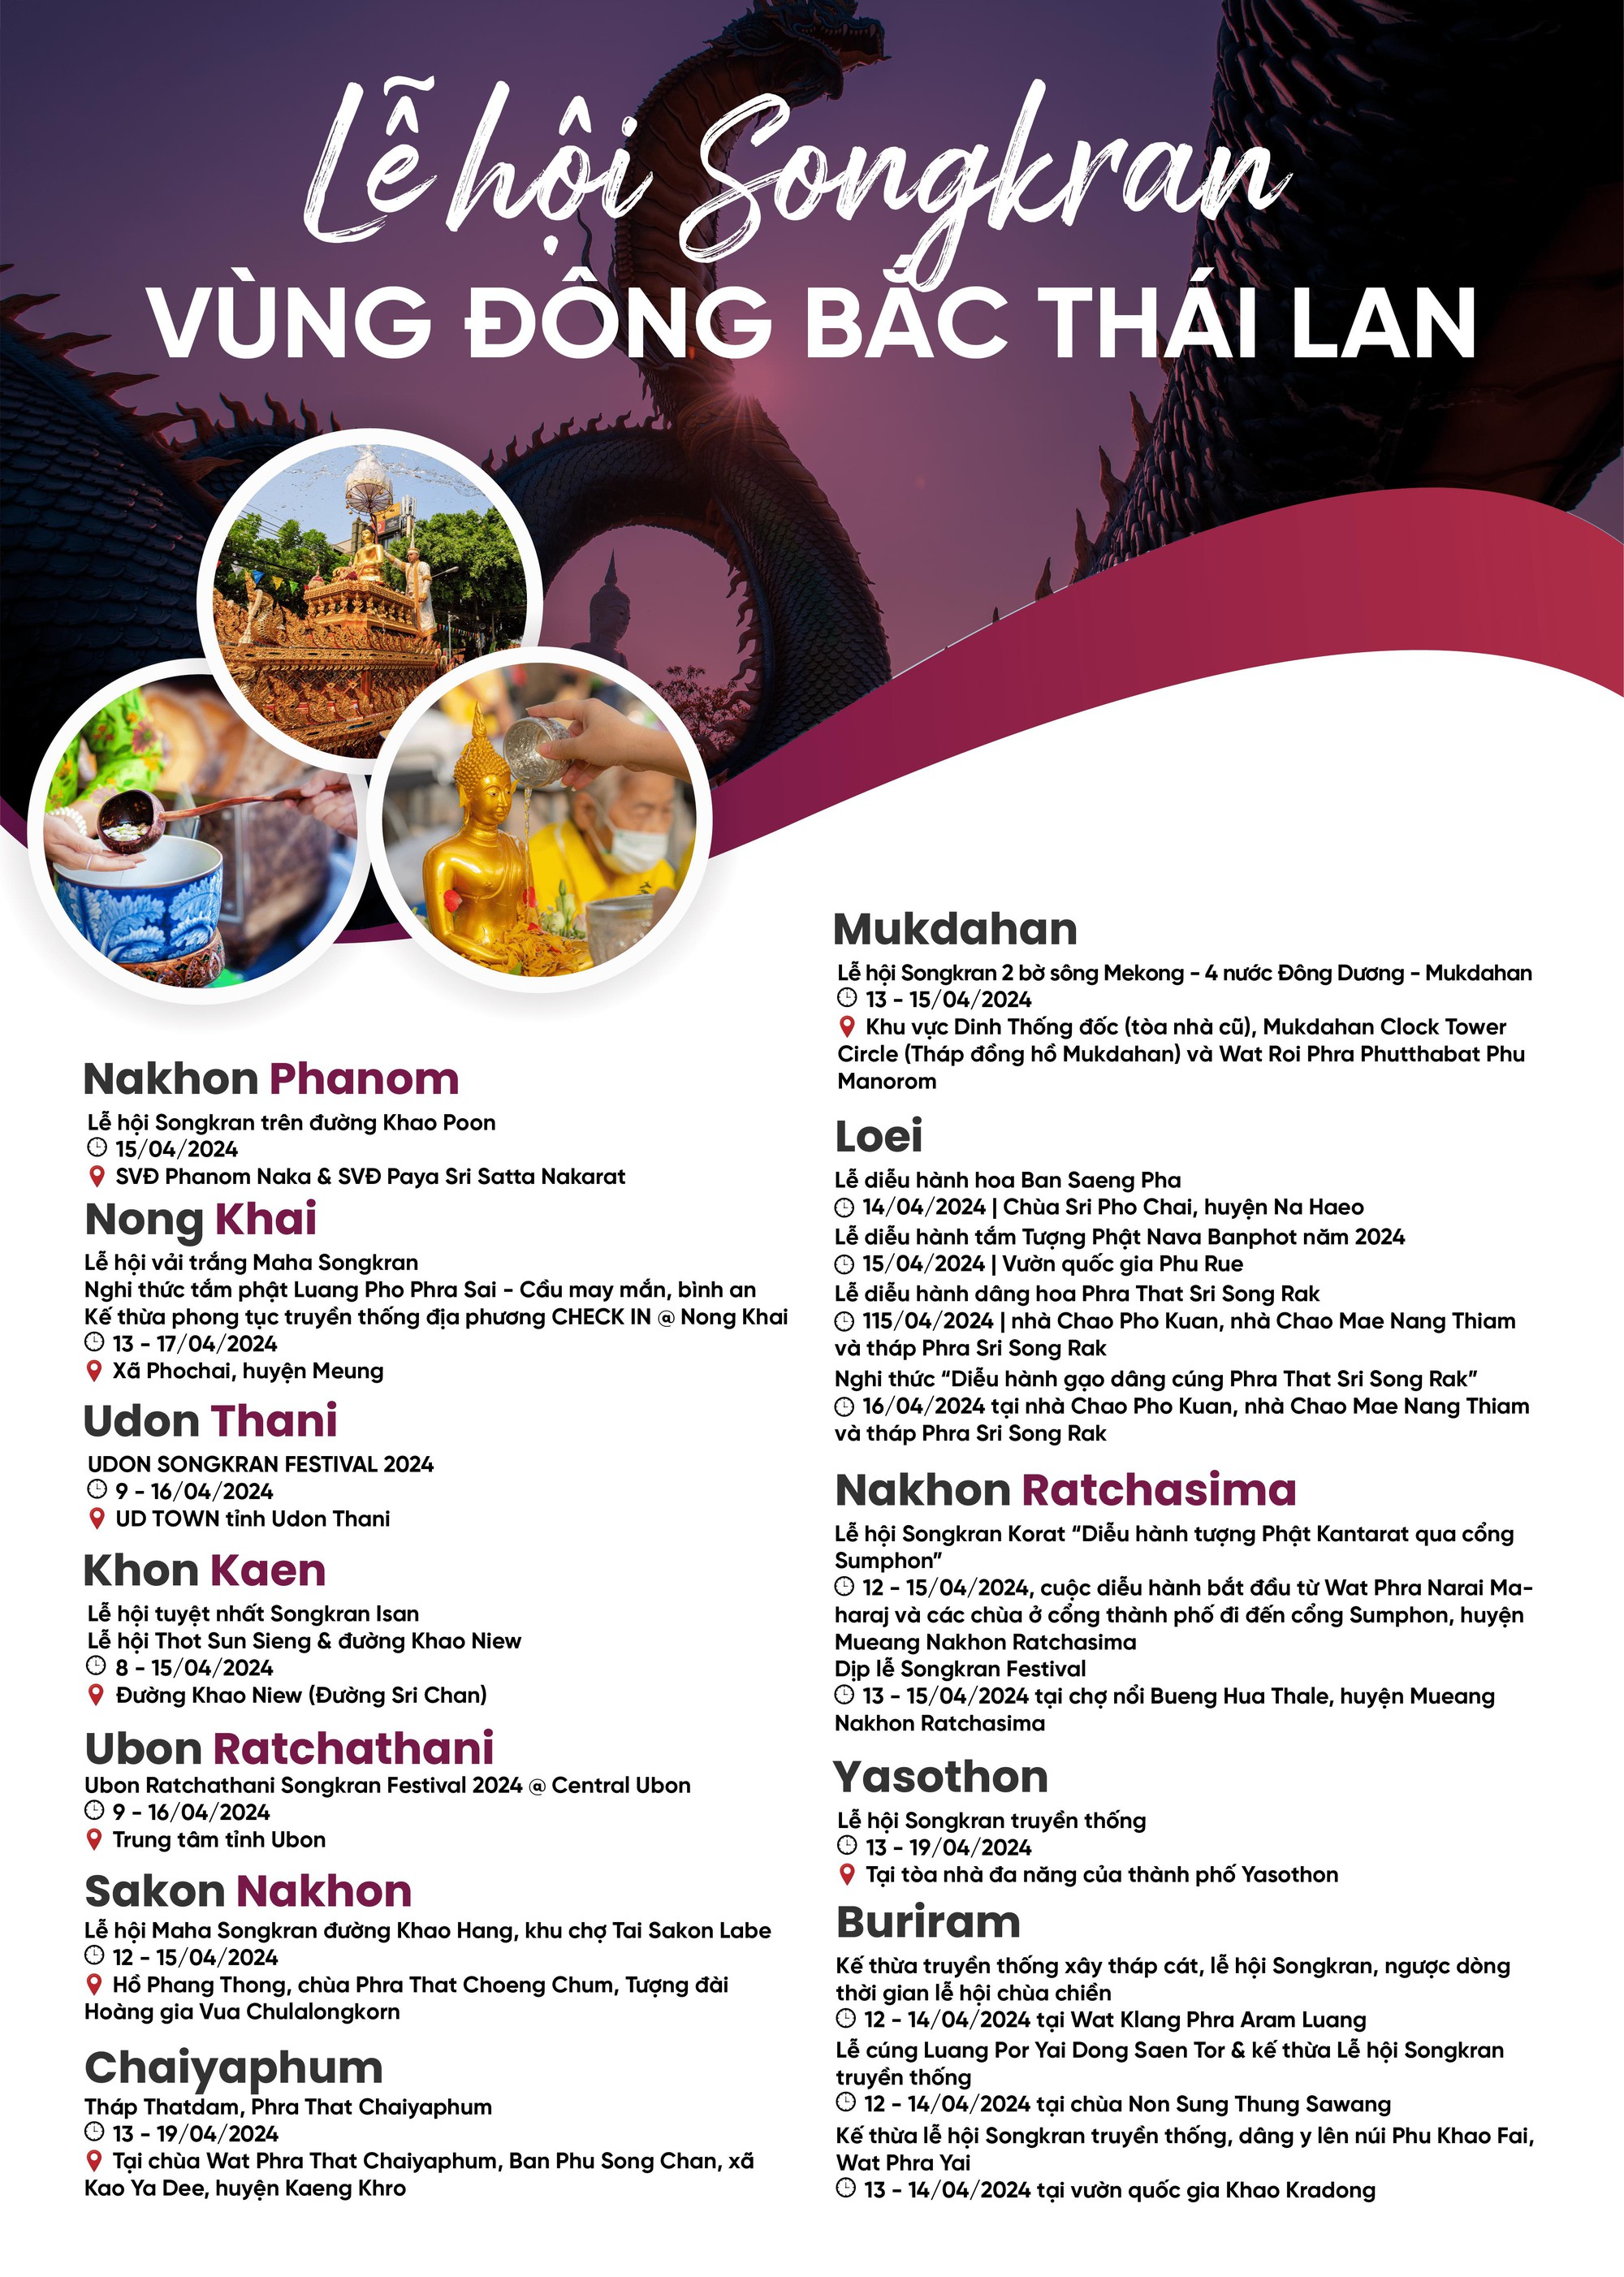 Tháng 4 các tỉnh tại Thái Lan tổ chức lễ hội Songkran quy mô lớn - Ảnh 8.